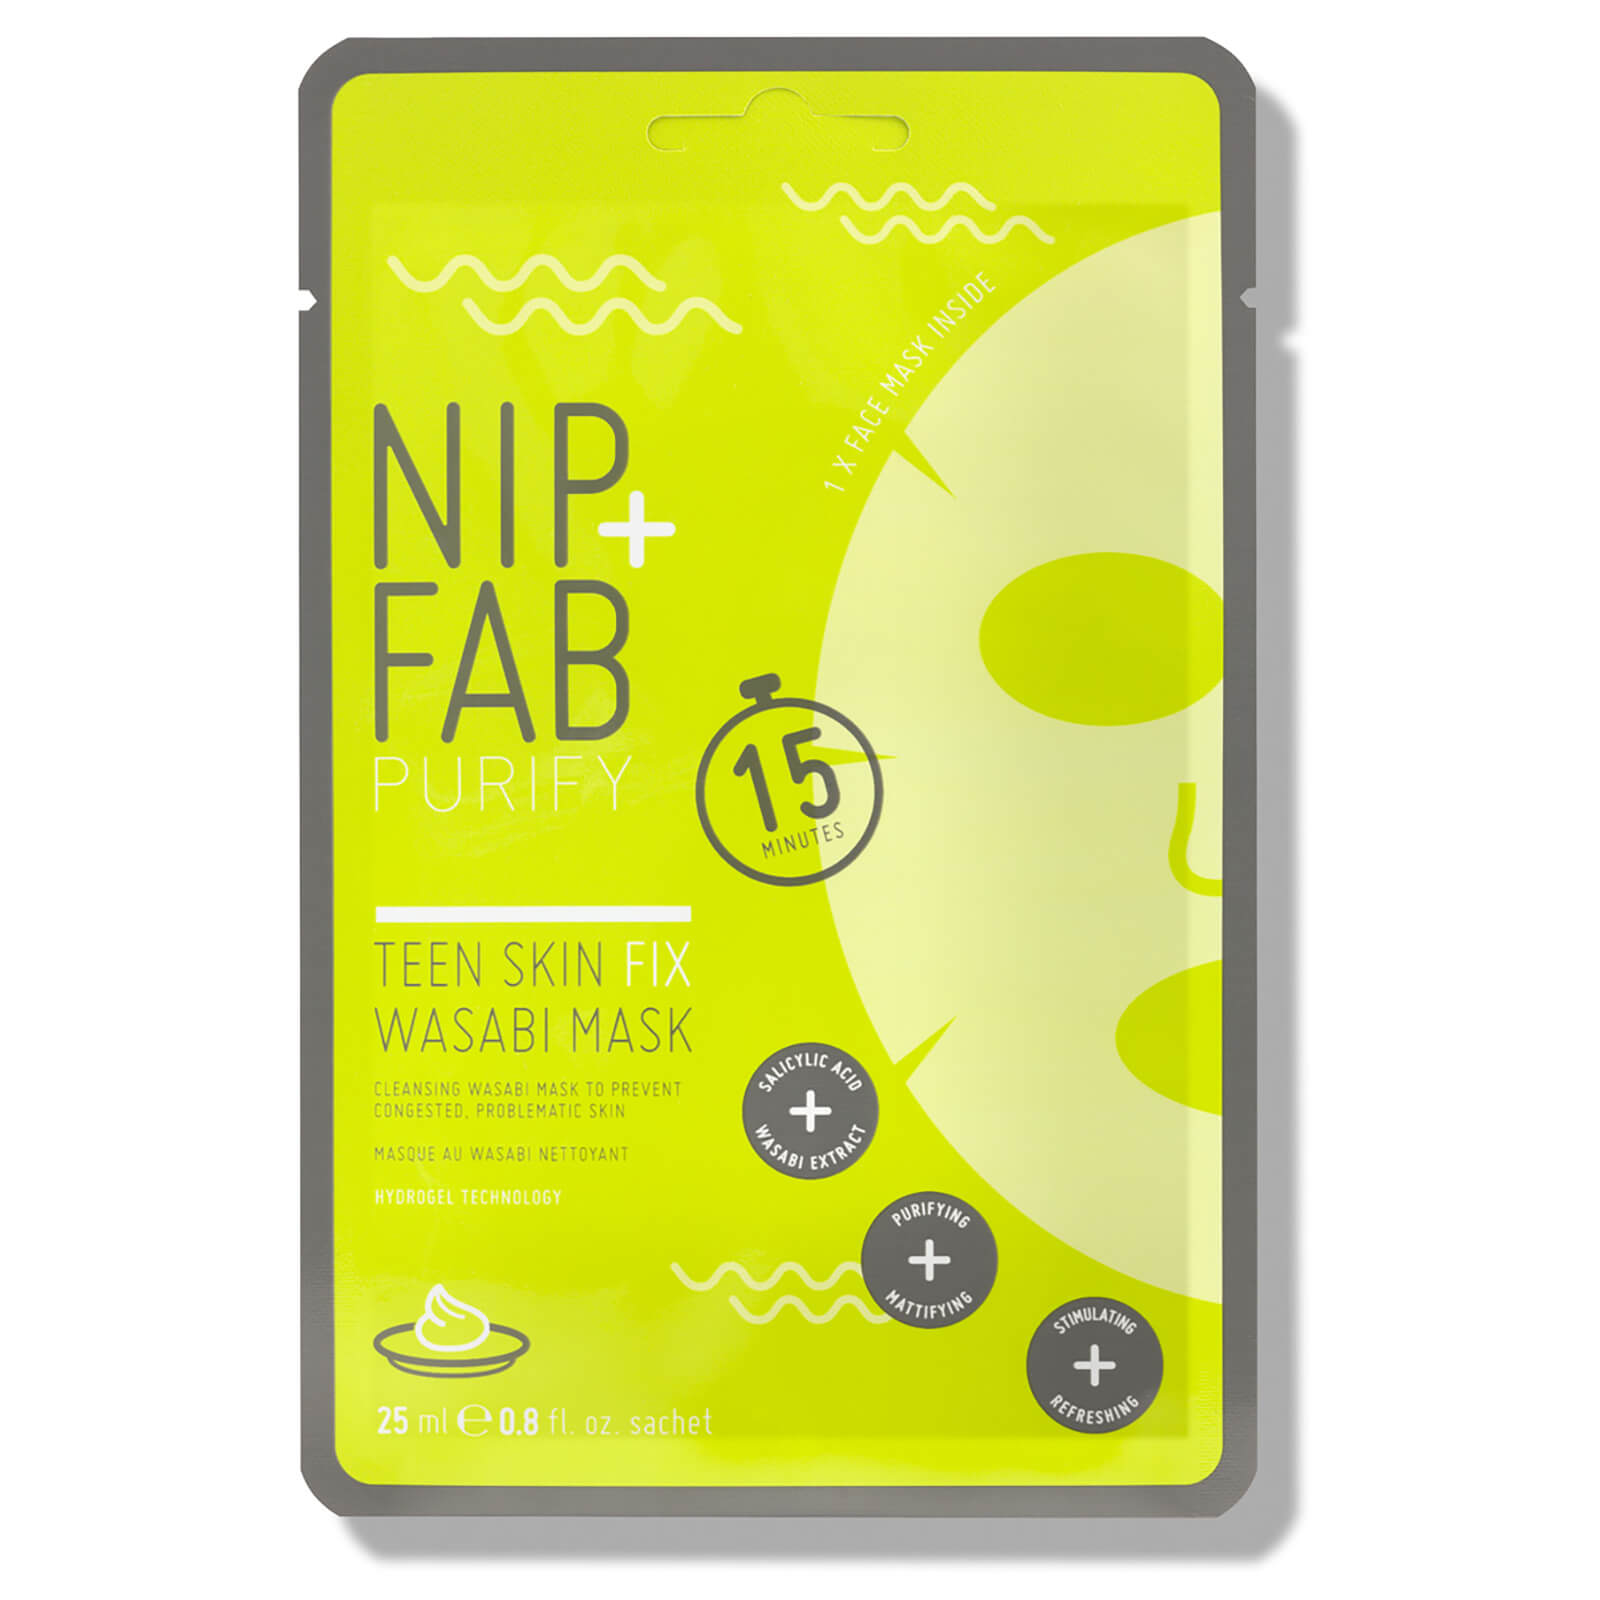 Mascarilla antimperfecciones Teen Skin Fix Blemish de NIP+FAB